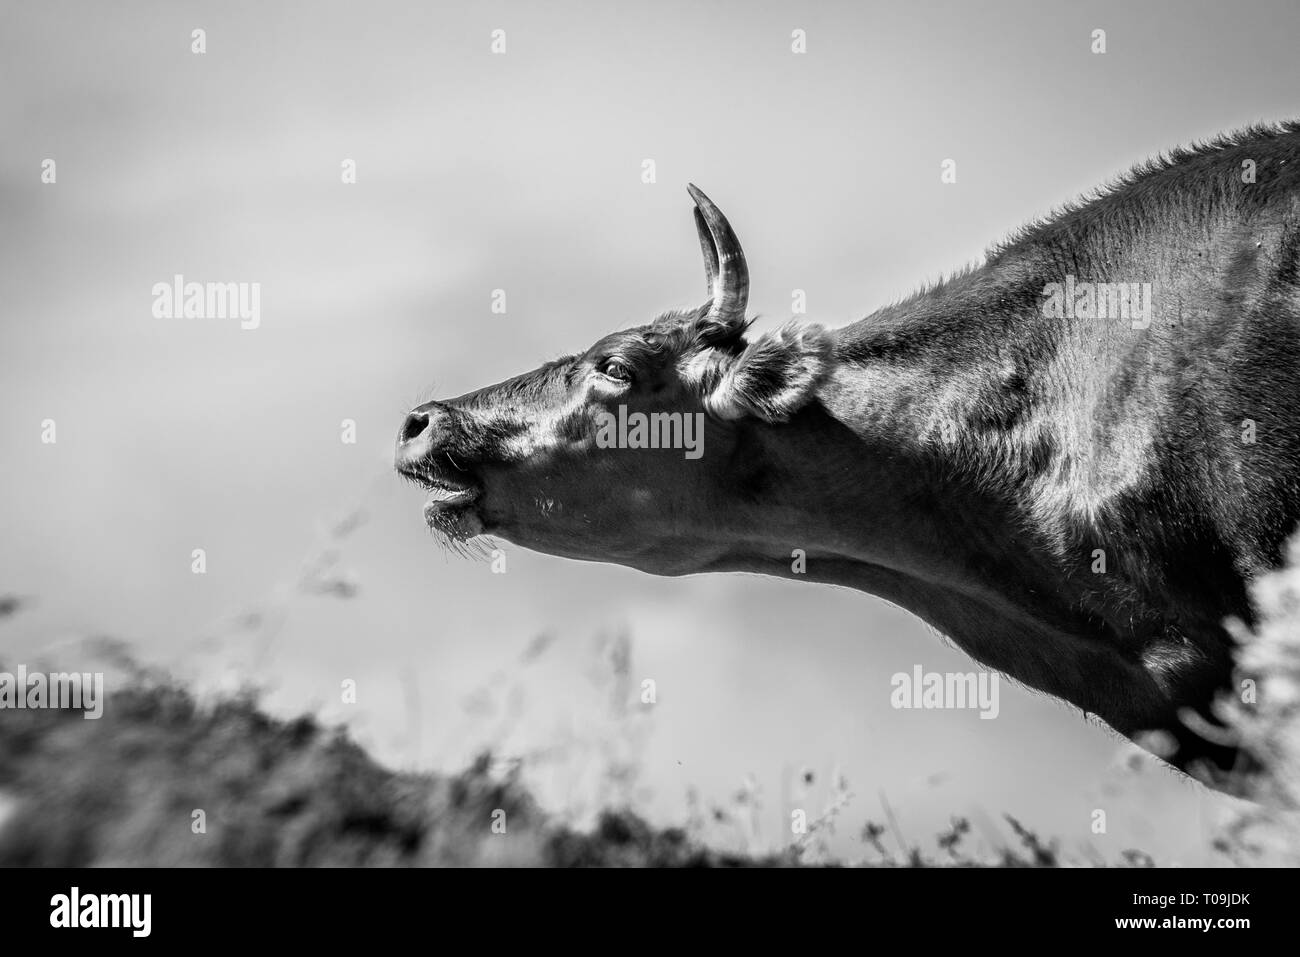 Kühe an einer Tränke Wasser trinken und baden bei starker Hitze und Dürre. Kalmückien Region, Russland. Stockfoto